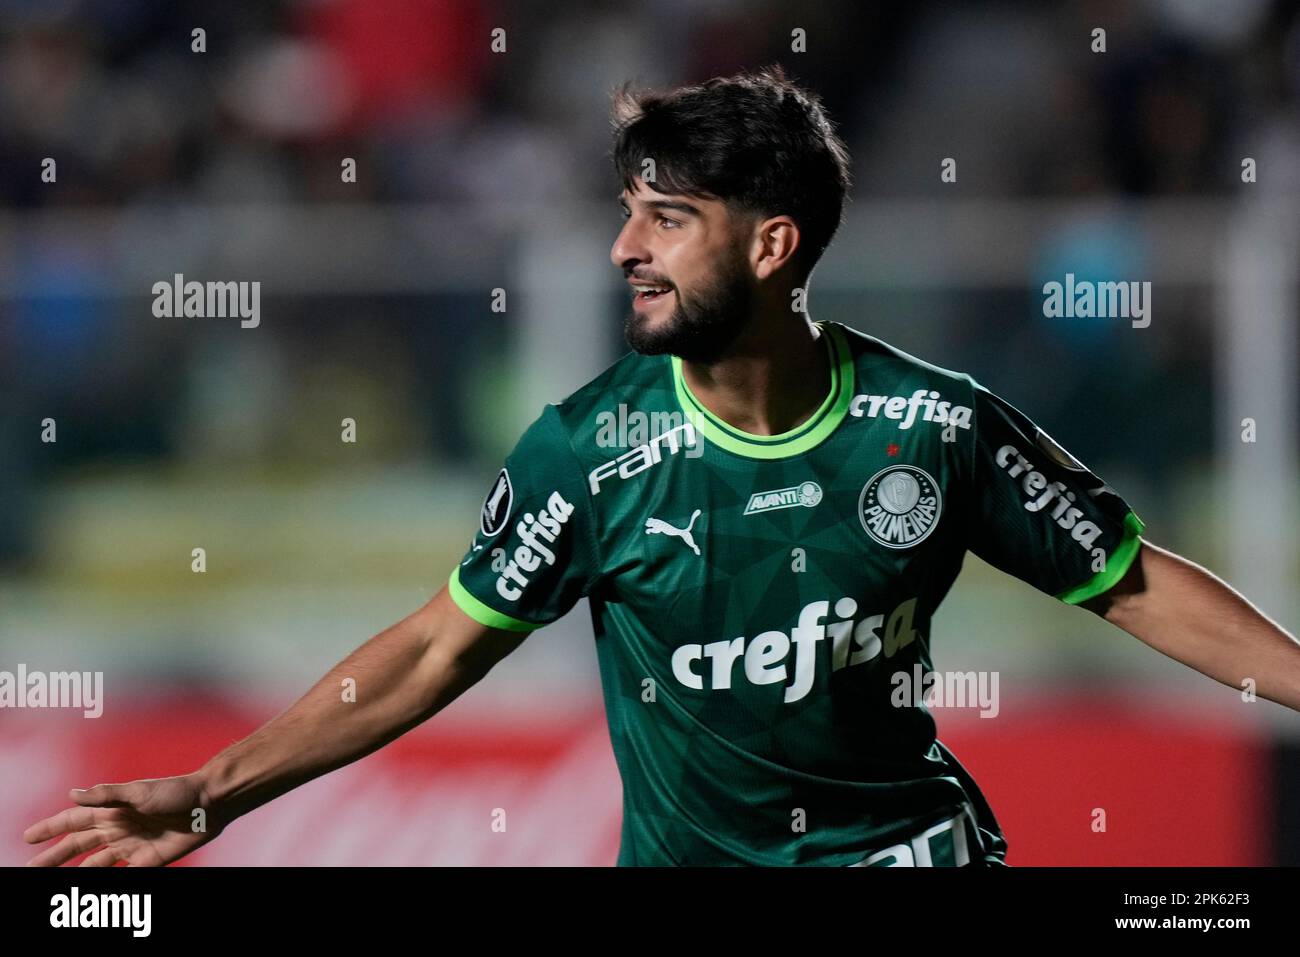 Quem é José Manuel López, novo reforço do Palmeiras?